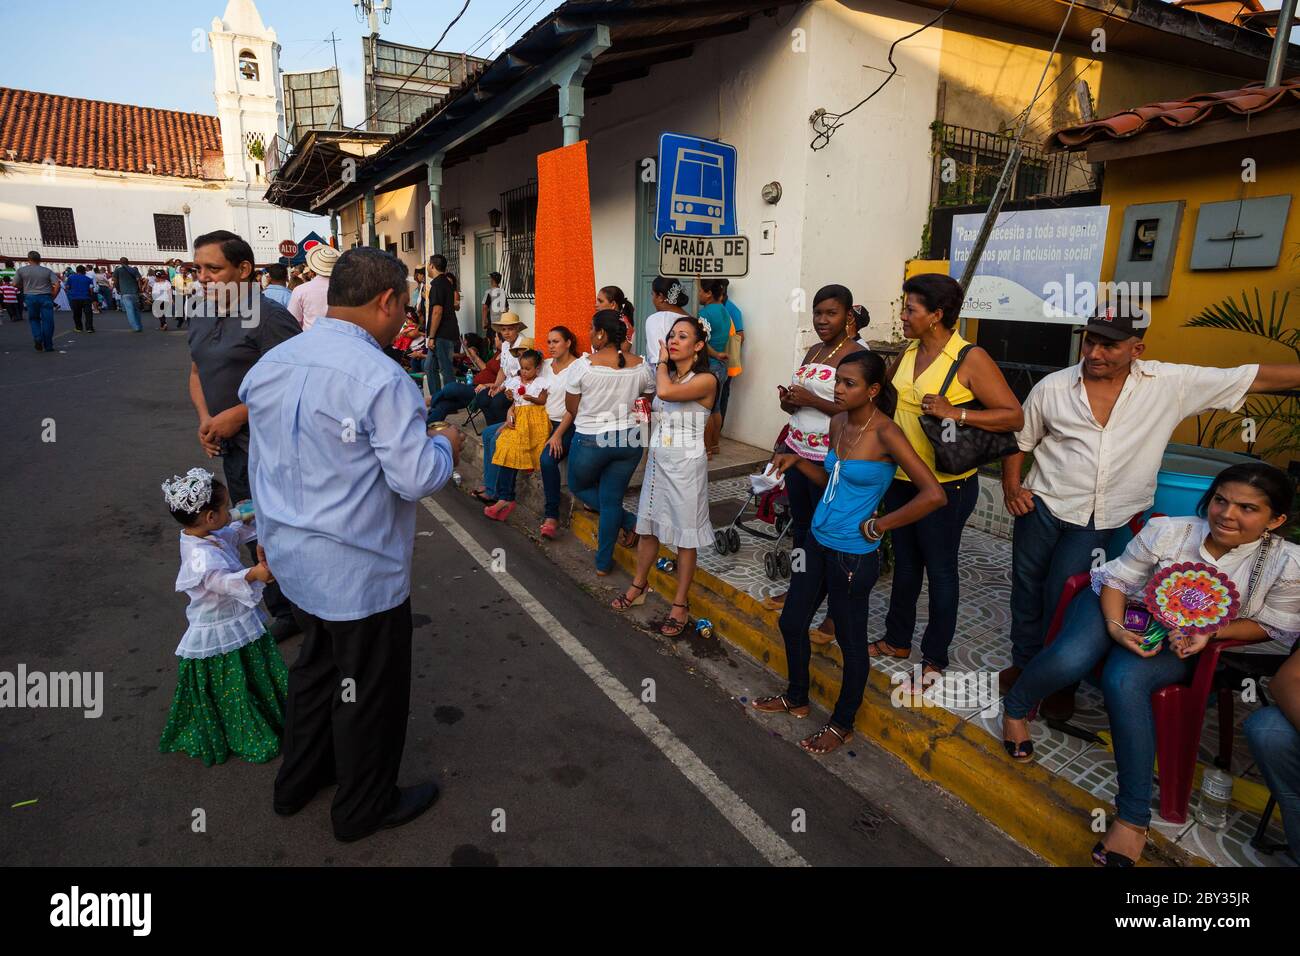 Panamanians at the bus stop on the annual event 'El desfile de las mil polleras' in Las Tablas, Los Santos province, Republic of Panama. Stock Photo